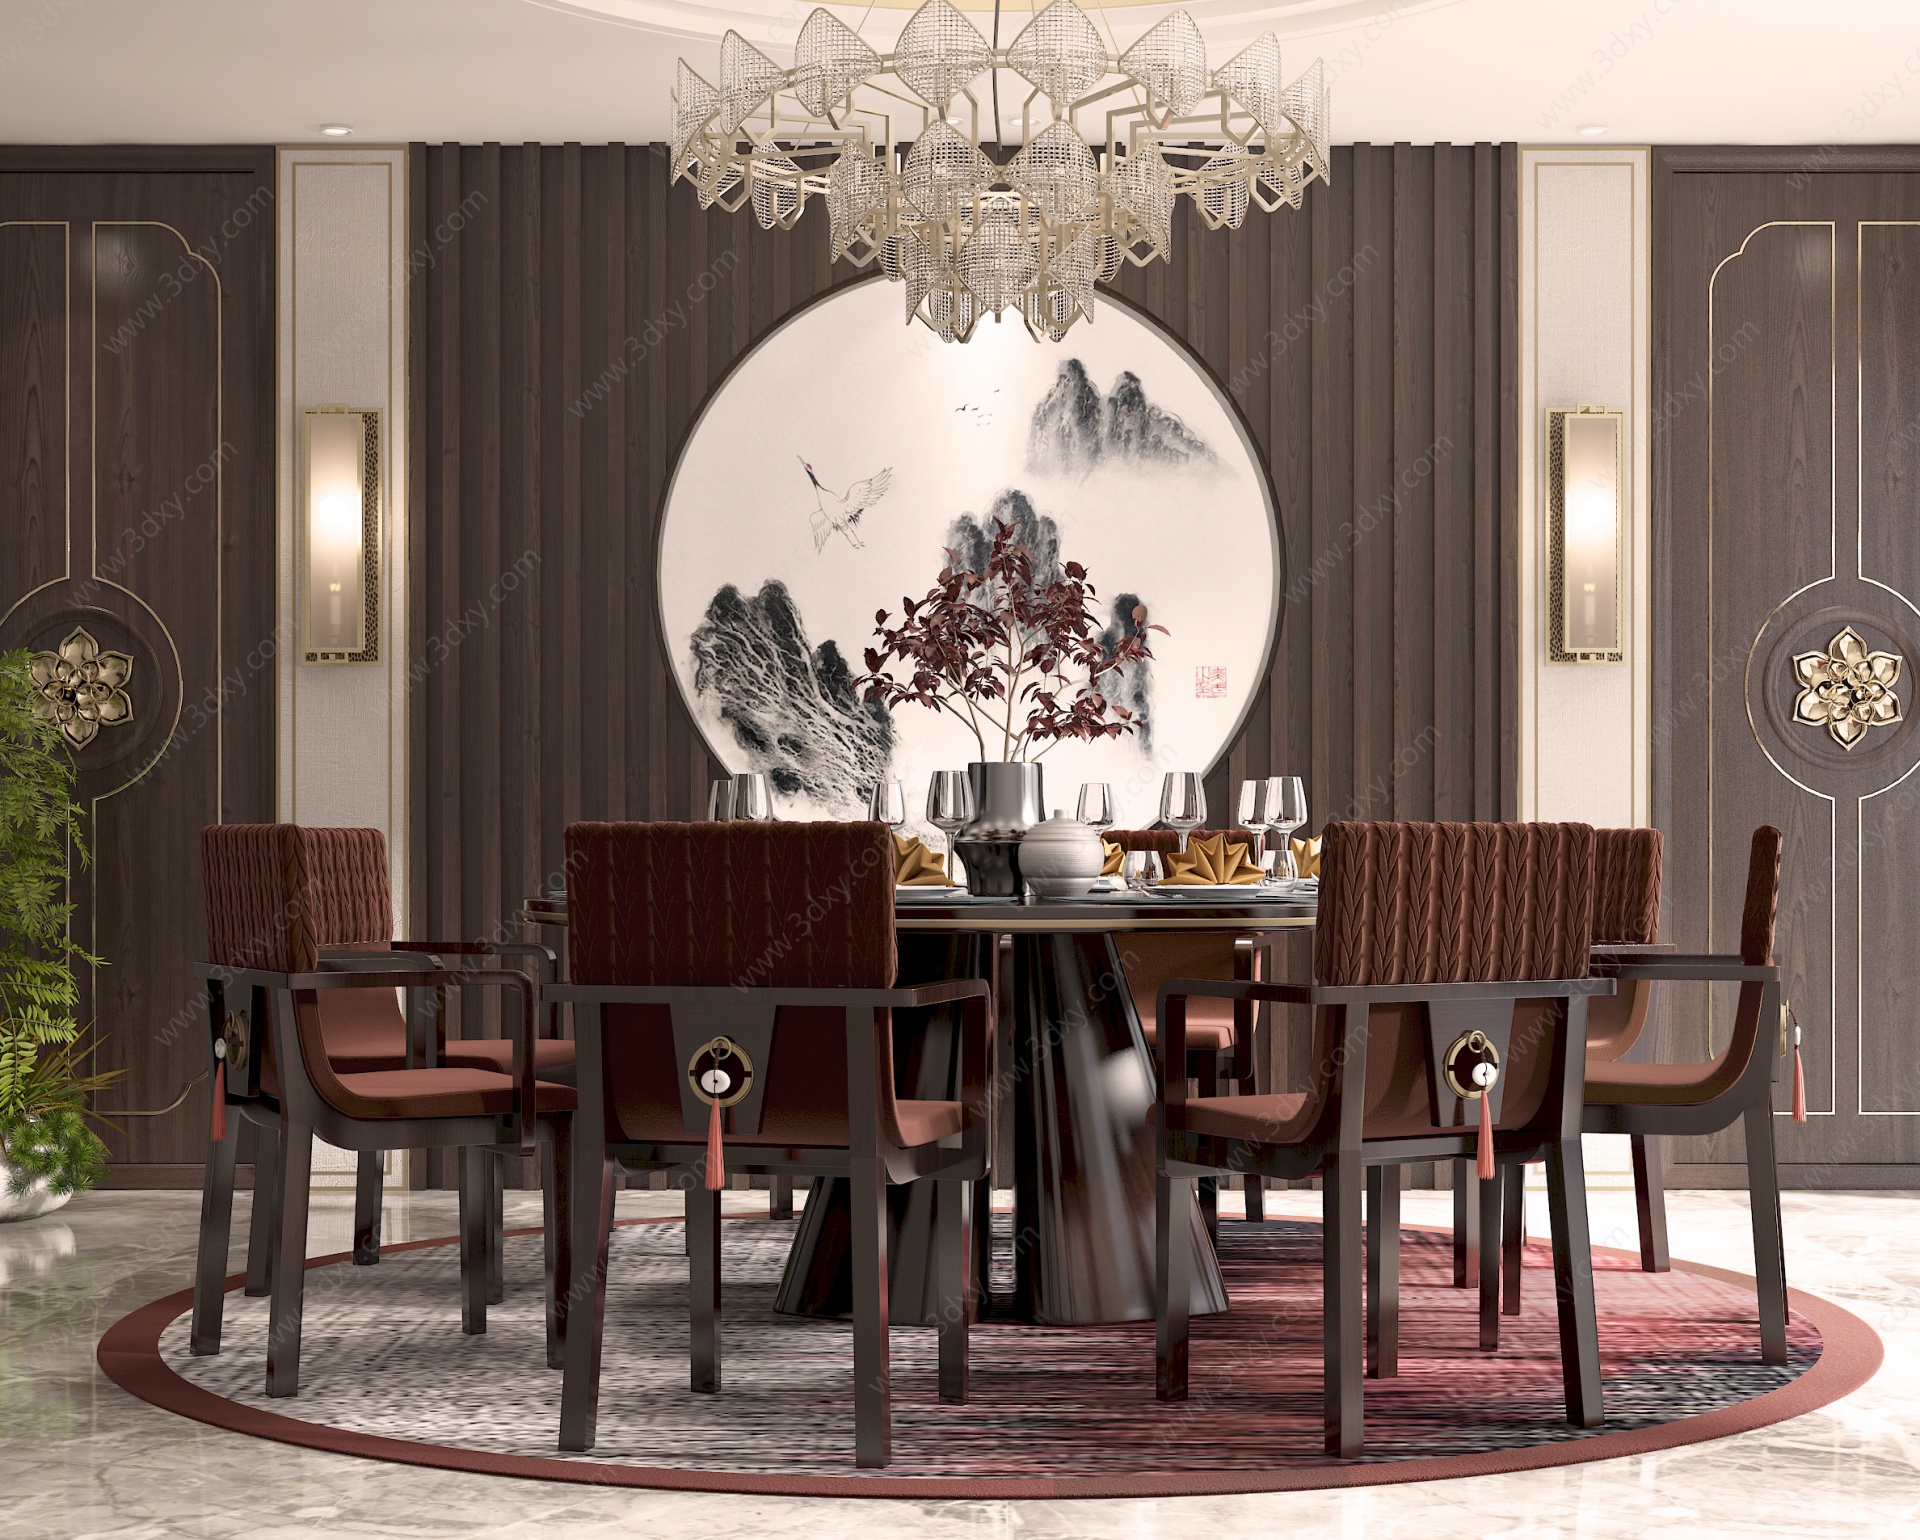 新中式圆桌餐厅3D模型